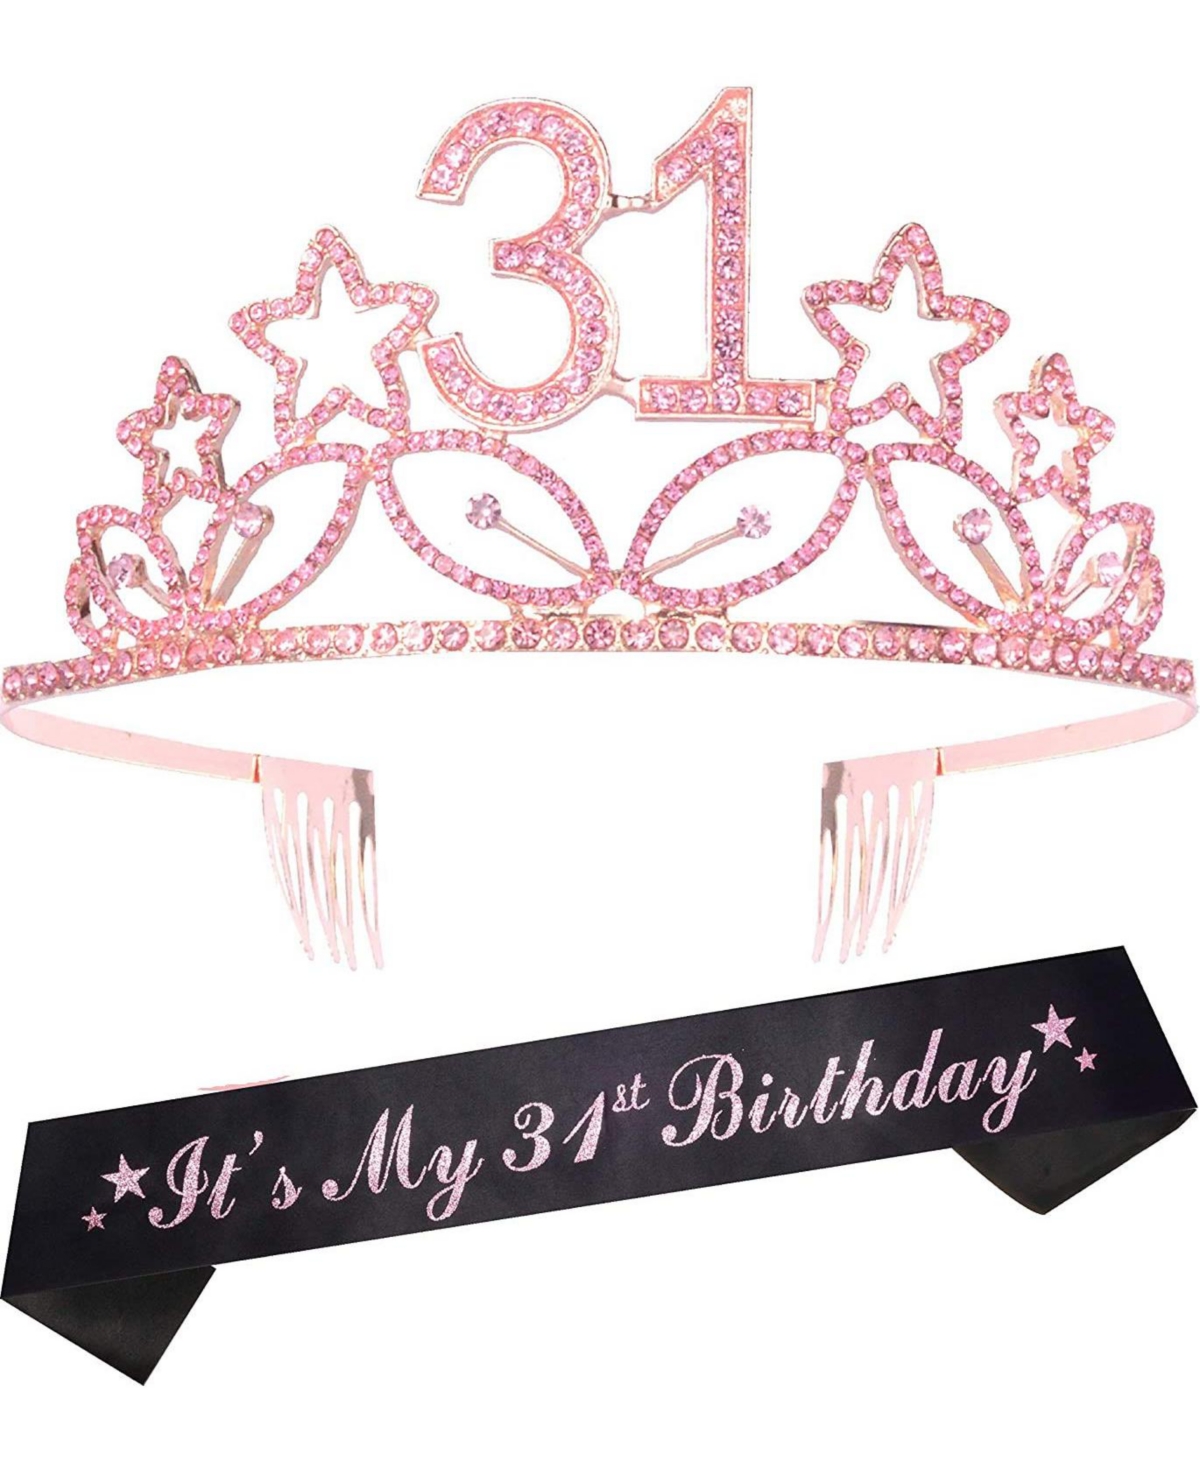 31st Birthday Sash and Tiara for Women - Fabulous Glitter Sash + Stars Rhinestone Pink Premium Metal Tiara for Her, 31st Birthday Gifts for